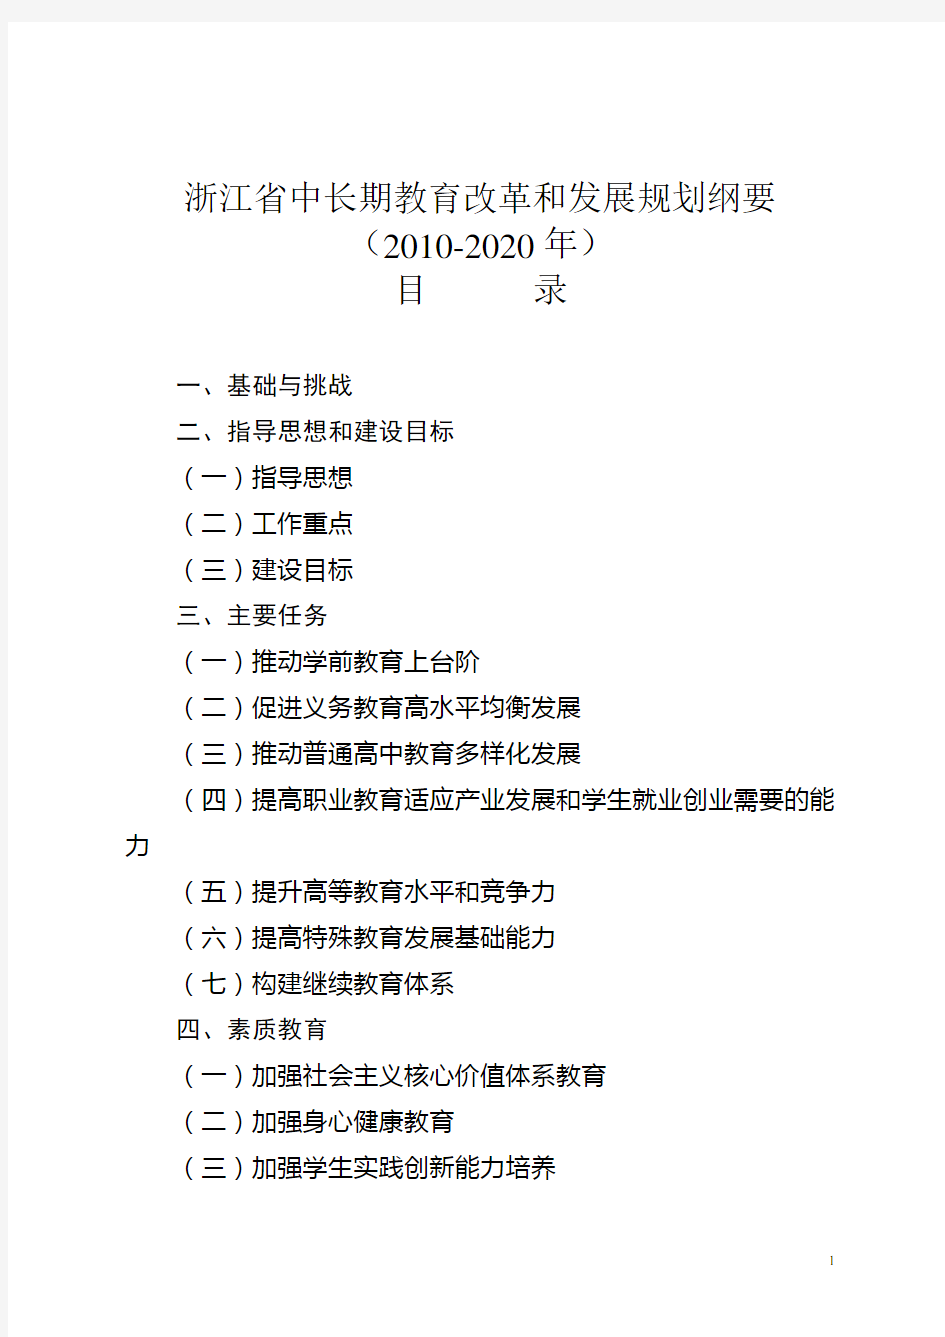 浙江省中长期教育改革和发展规划纲要(2010-2020年)